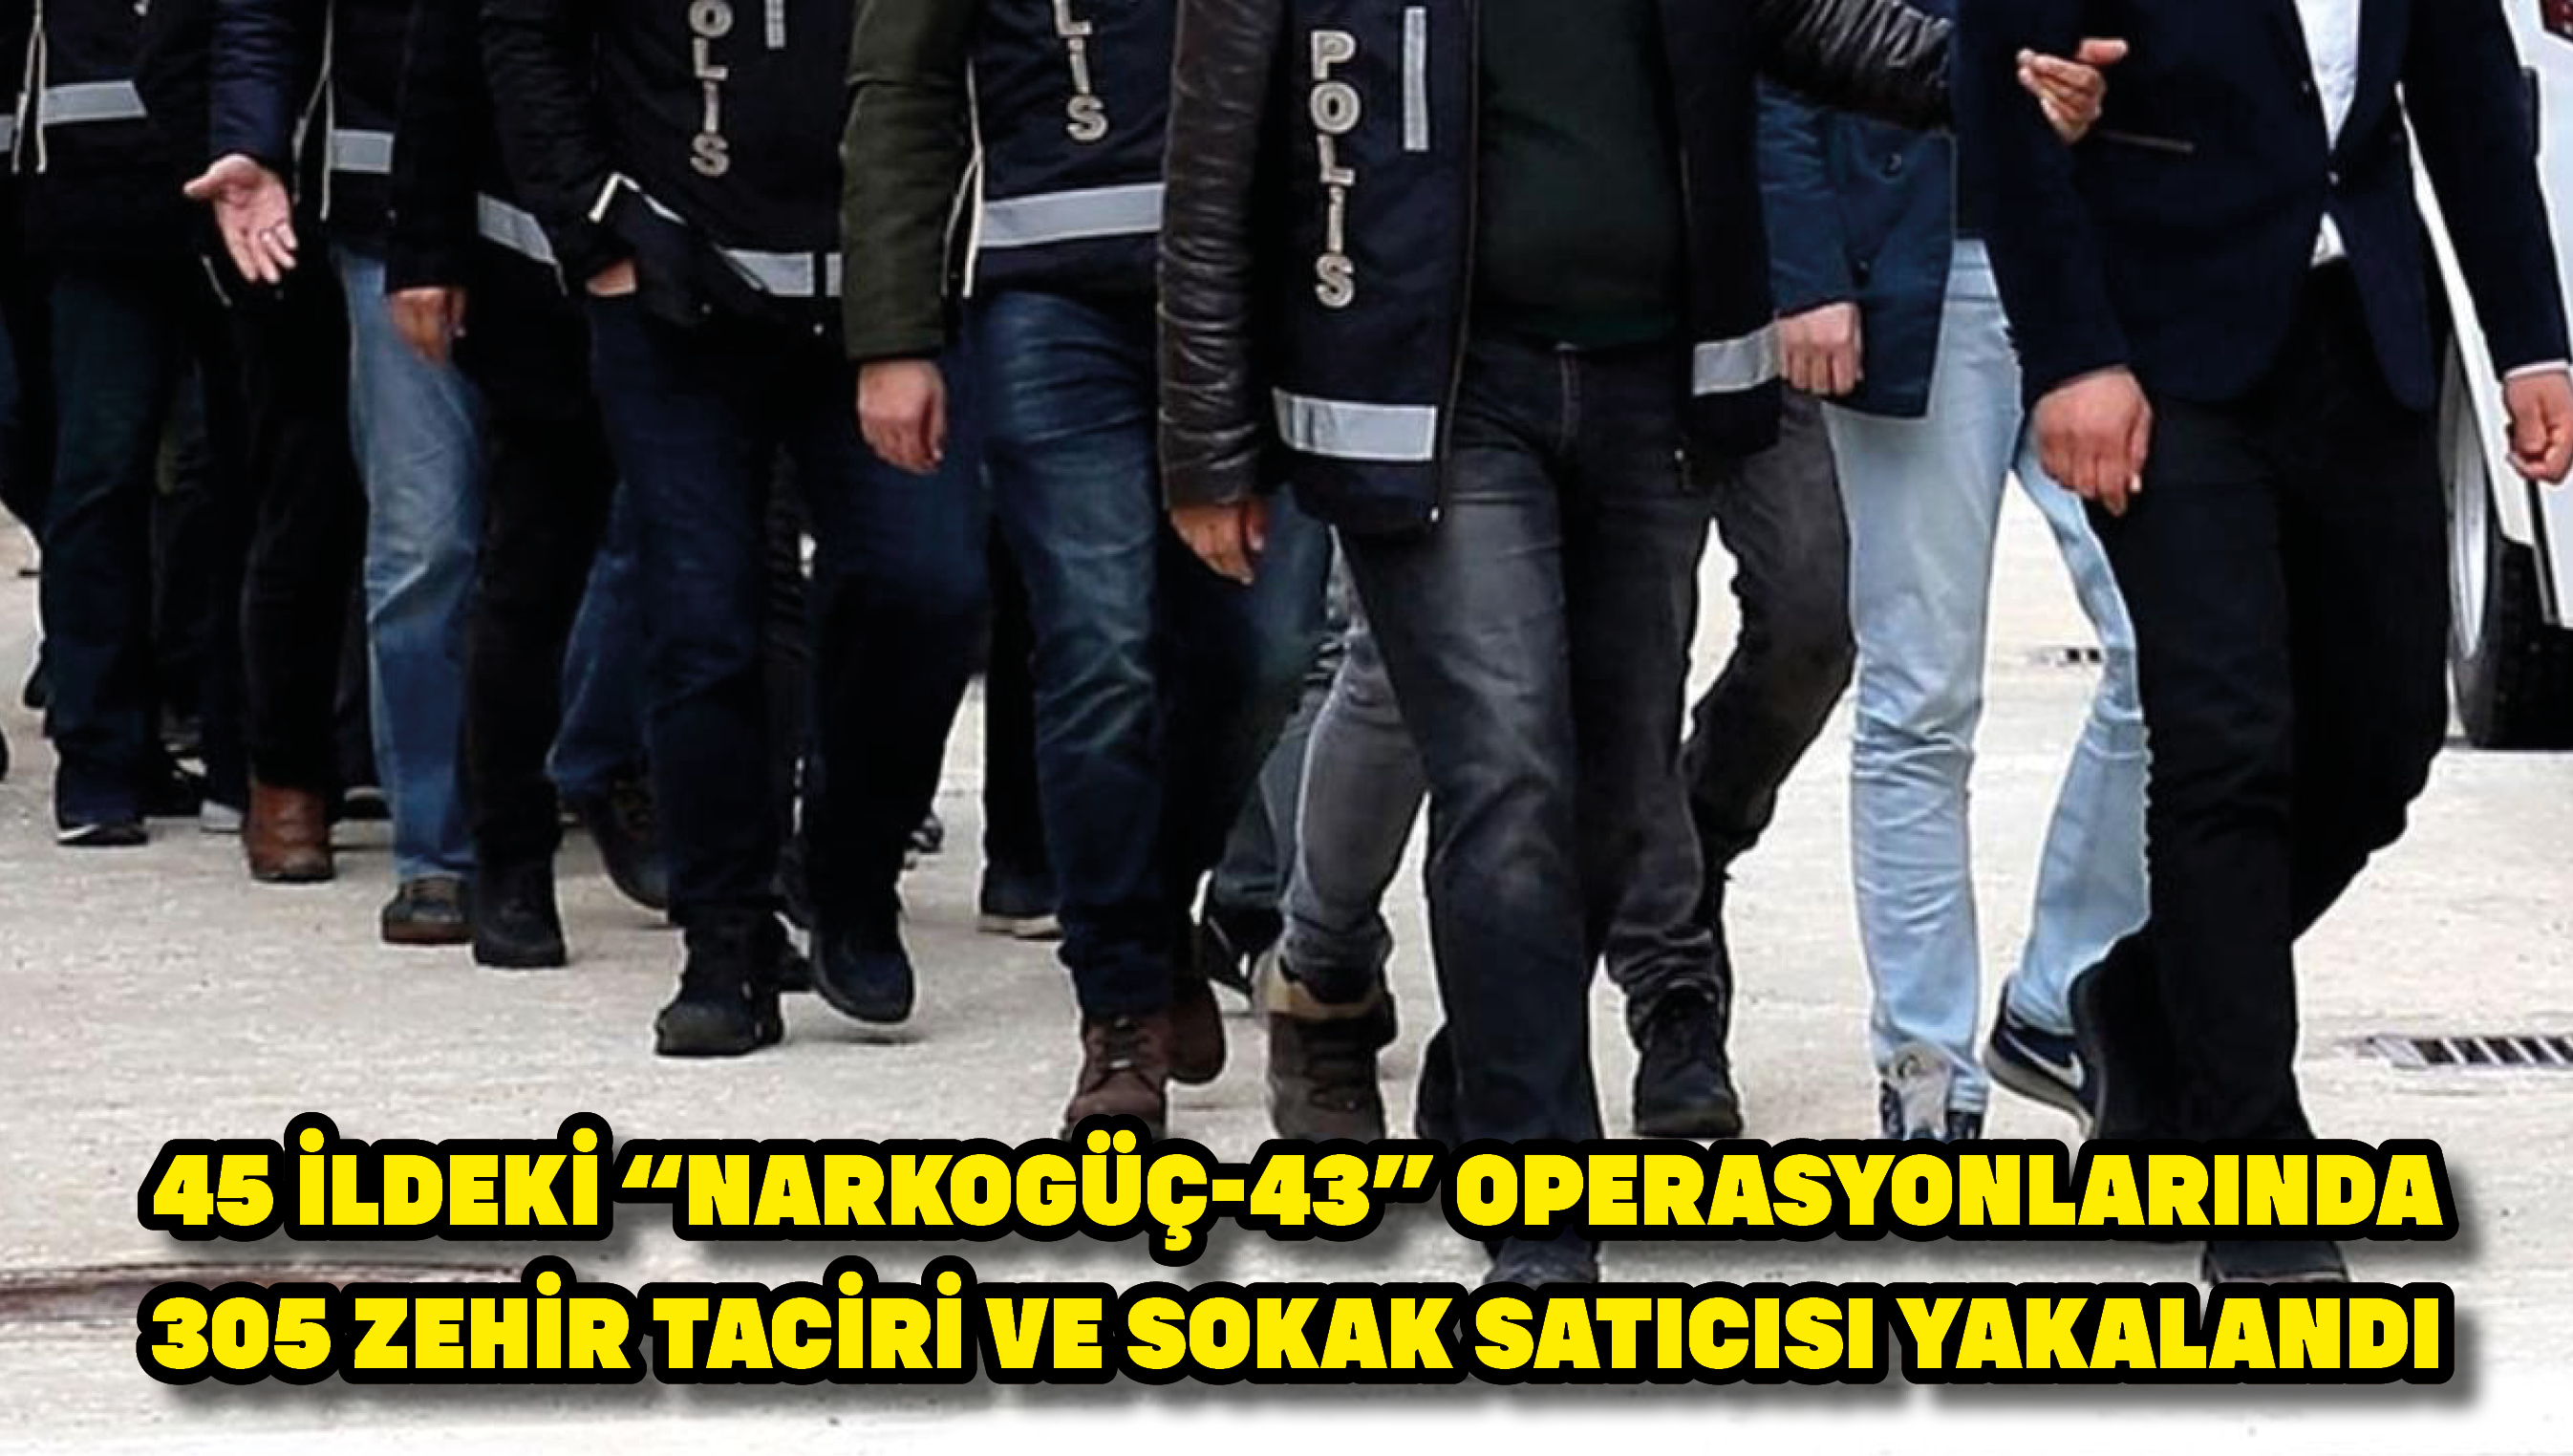 45 ildeki “Narkogüç-43” operasyonlarında 305 zehir taciri ve sokak satıcısı yakalandı